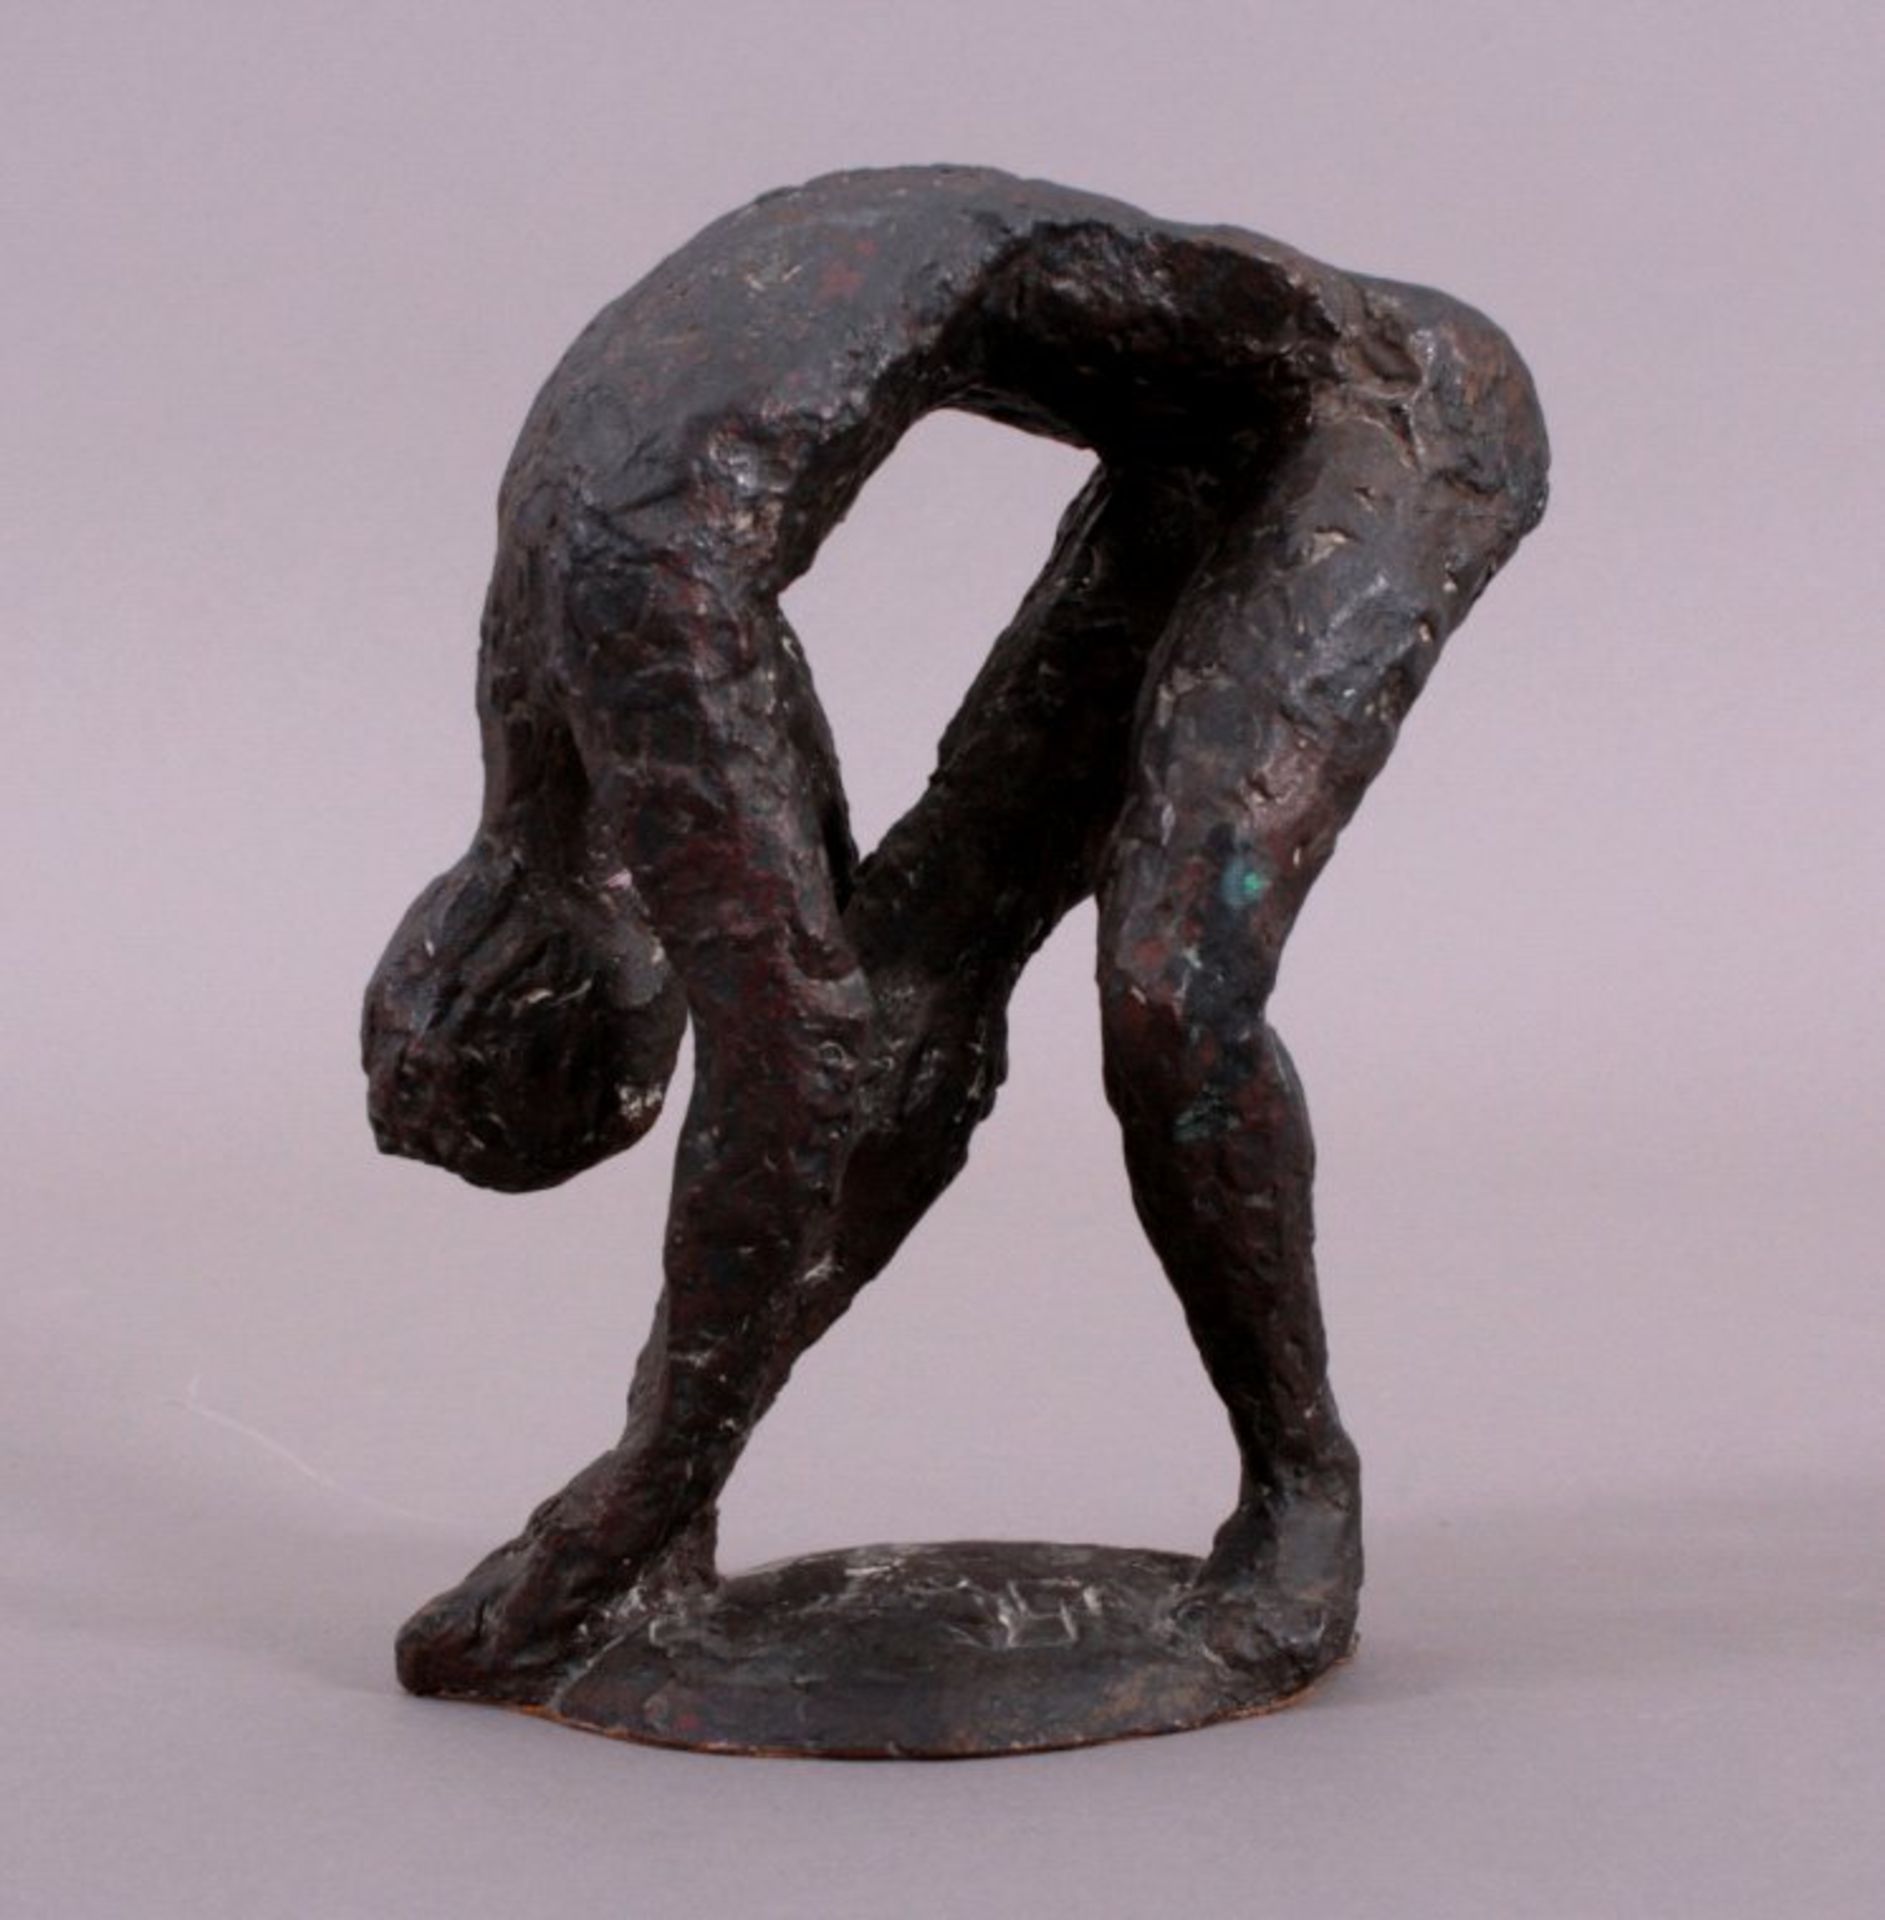 Monogrammist U.P.?, TänzerinBronze-Skulptur, dunkelbraun und partiel grünlich patiniert,weibliche